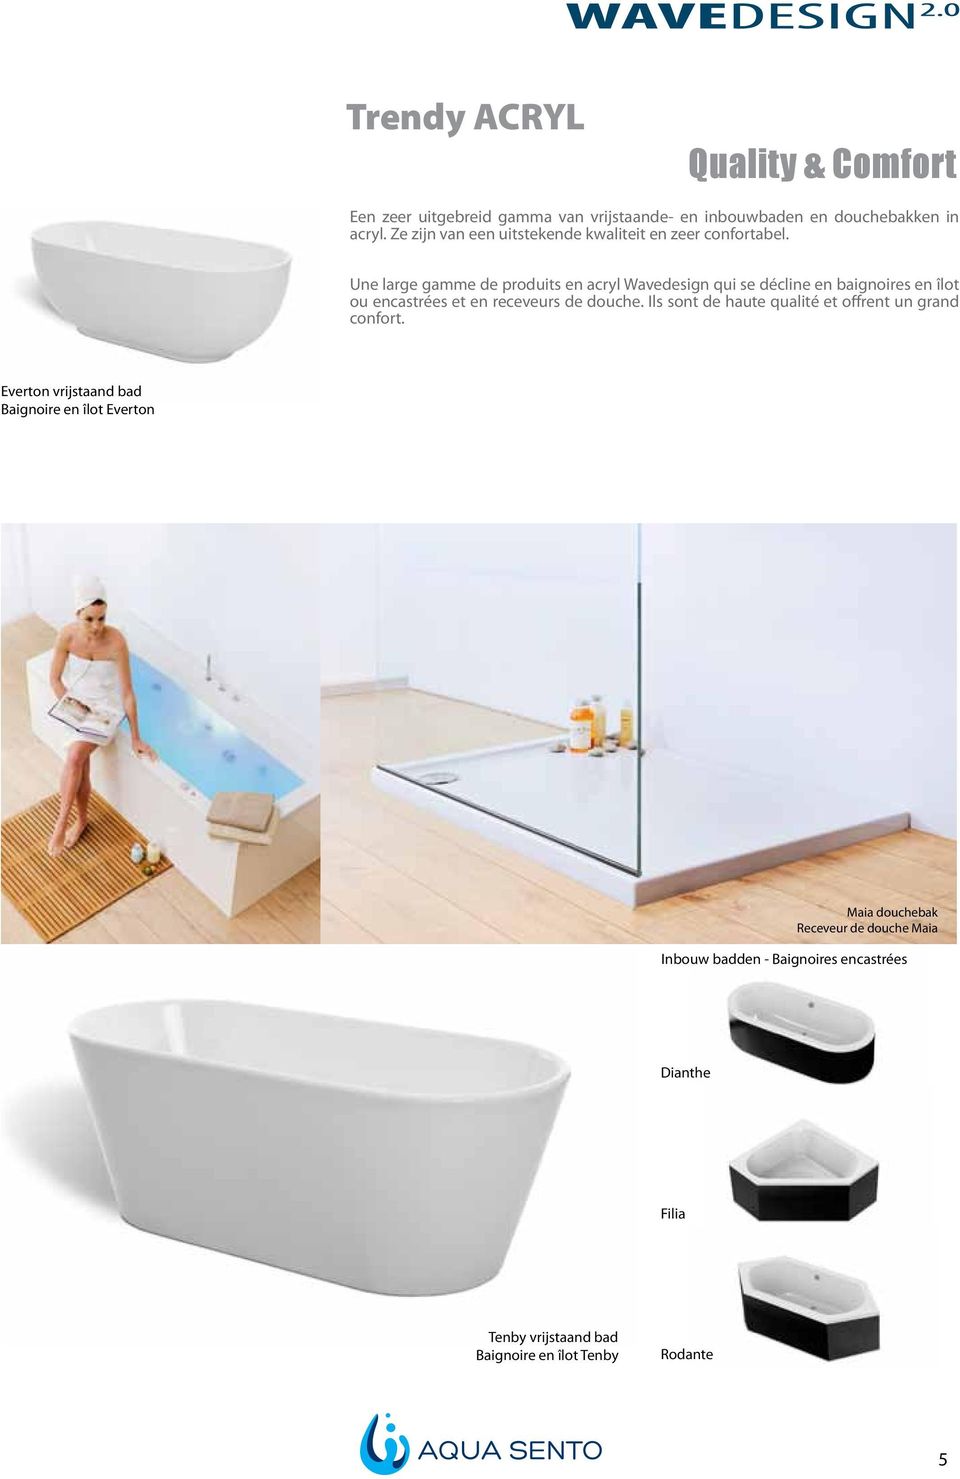 Une large gamme de produits en acryl Wavedesign qui se décline en baignoires en îlot ou encastrées et en receveurs de douche.